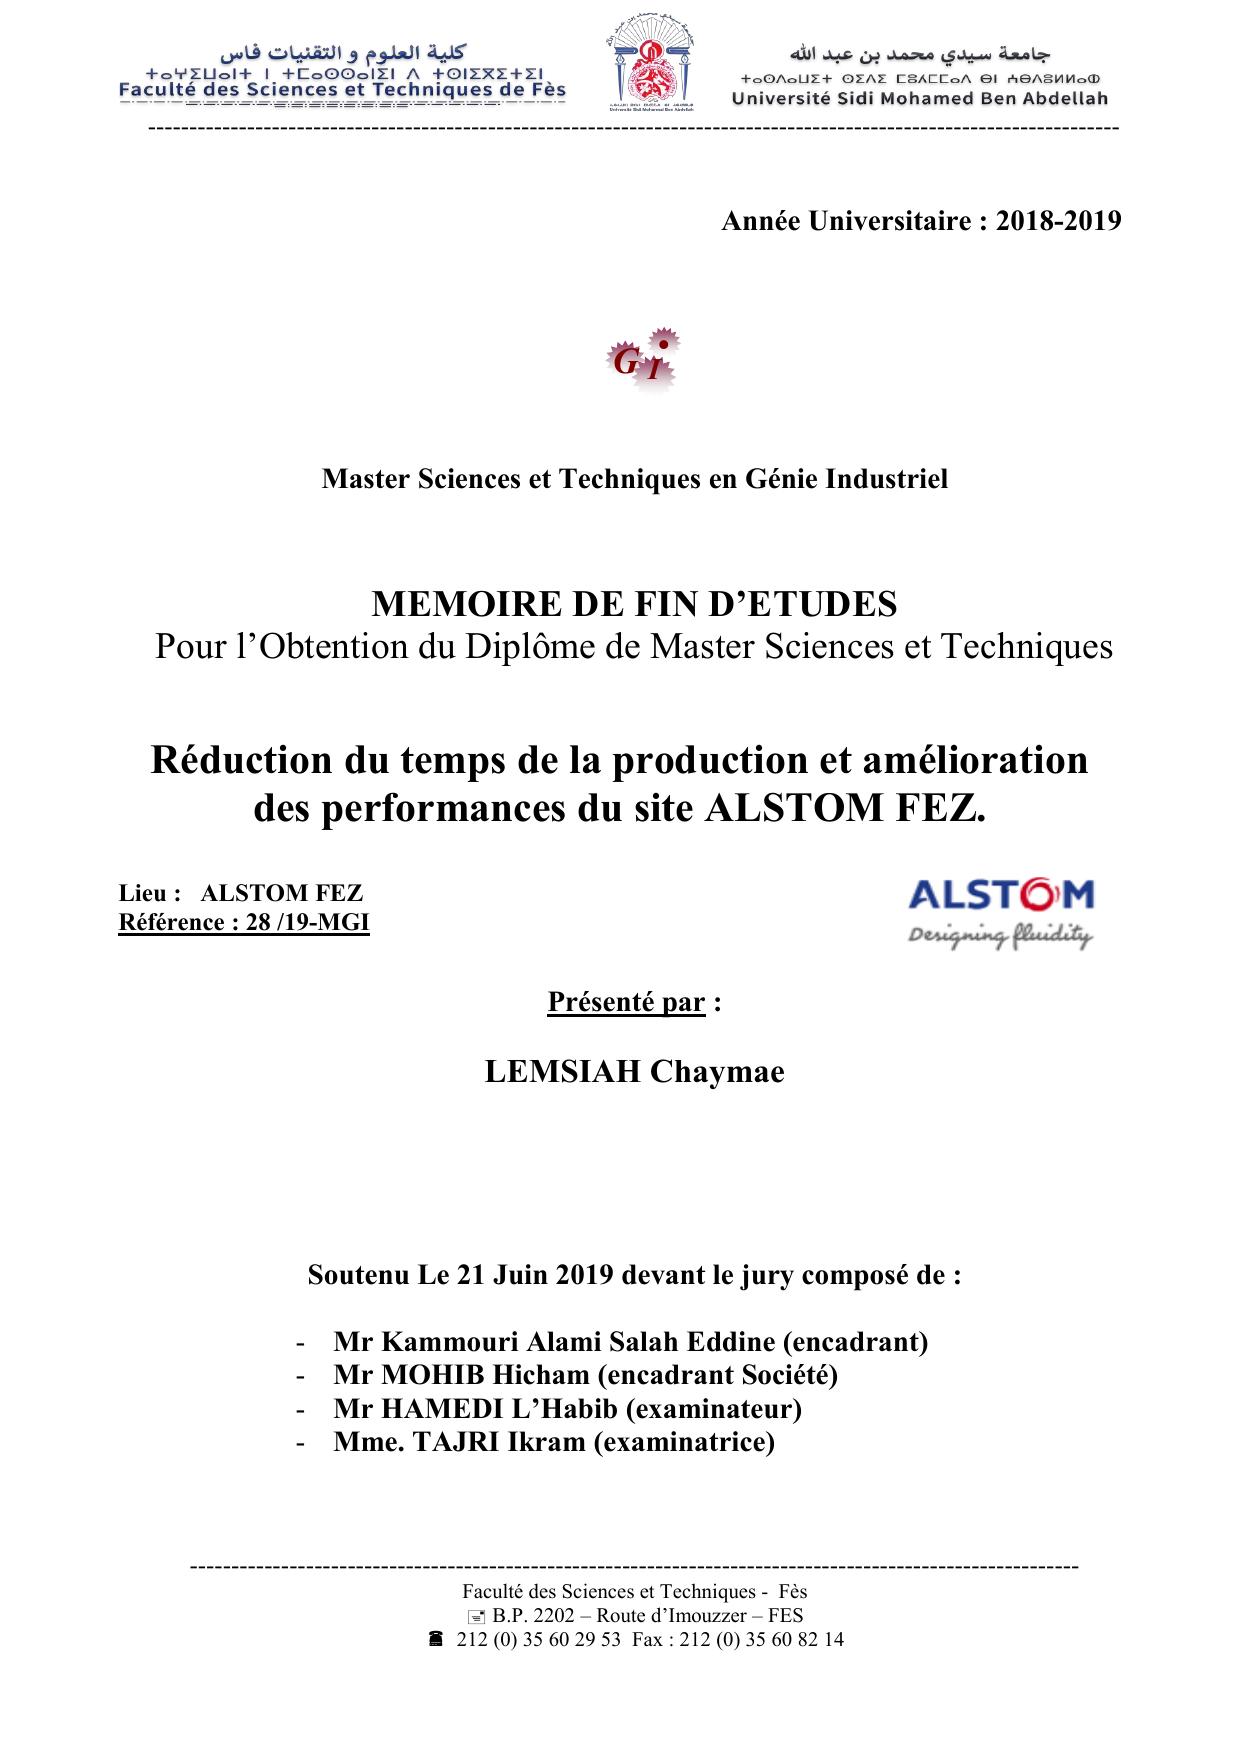 Réduction du temps de la production et amélioration des performances du site ALSTOM FEZ